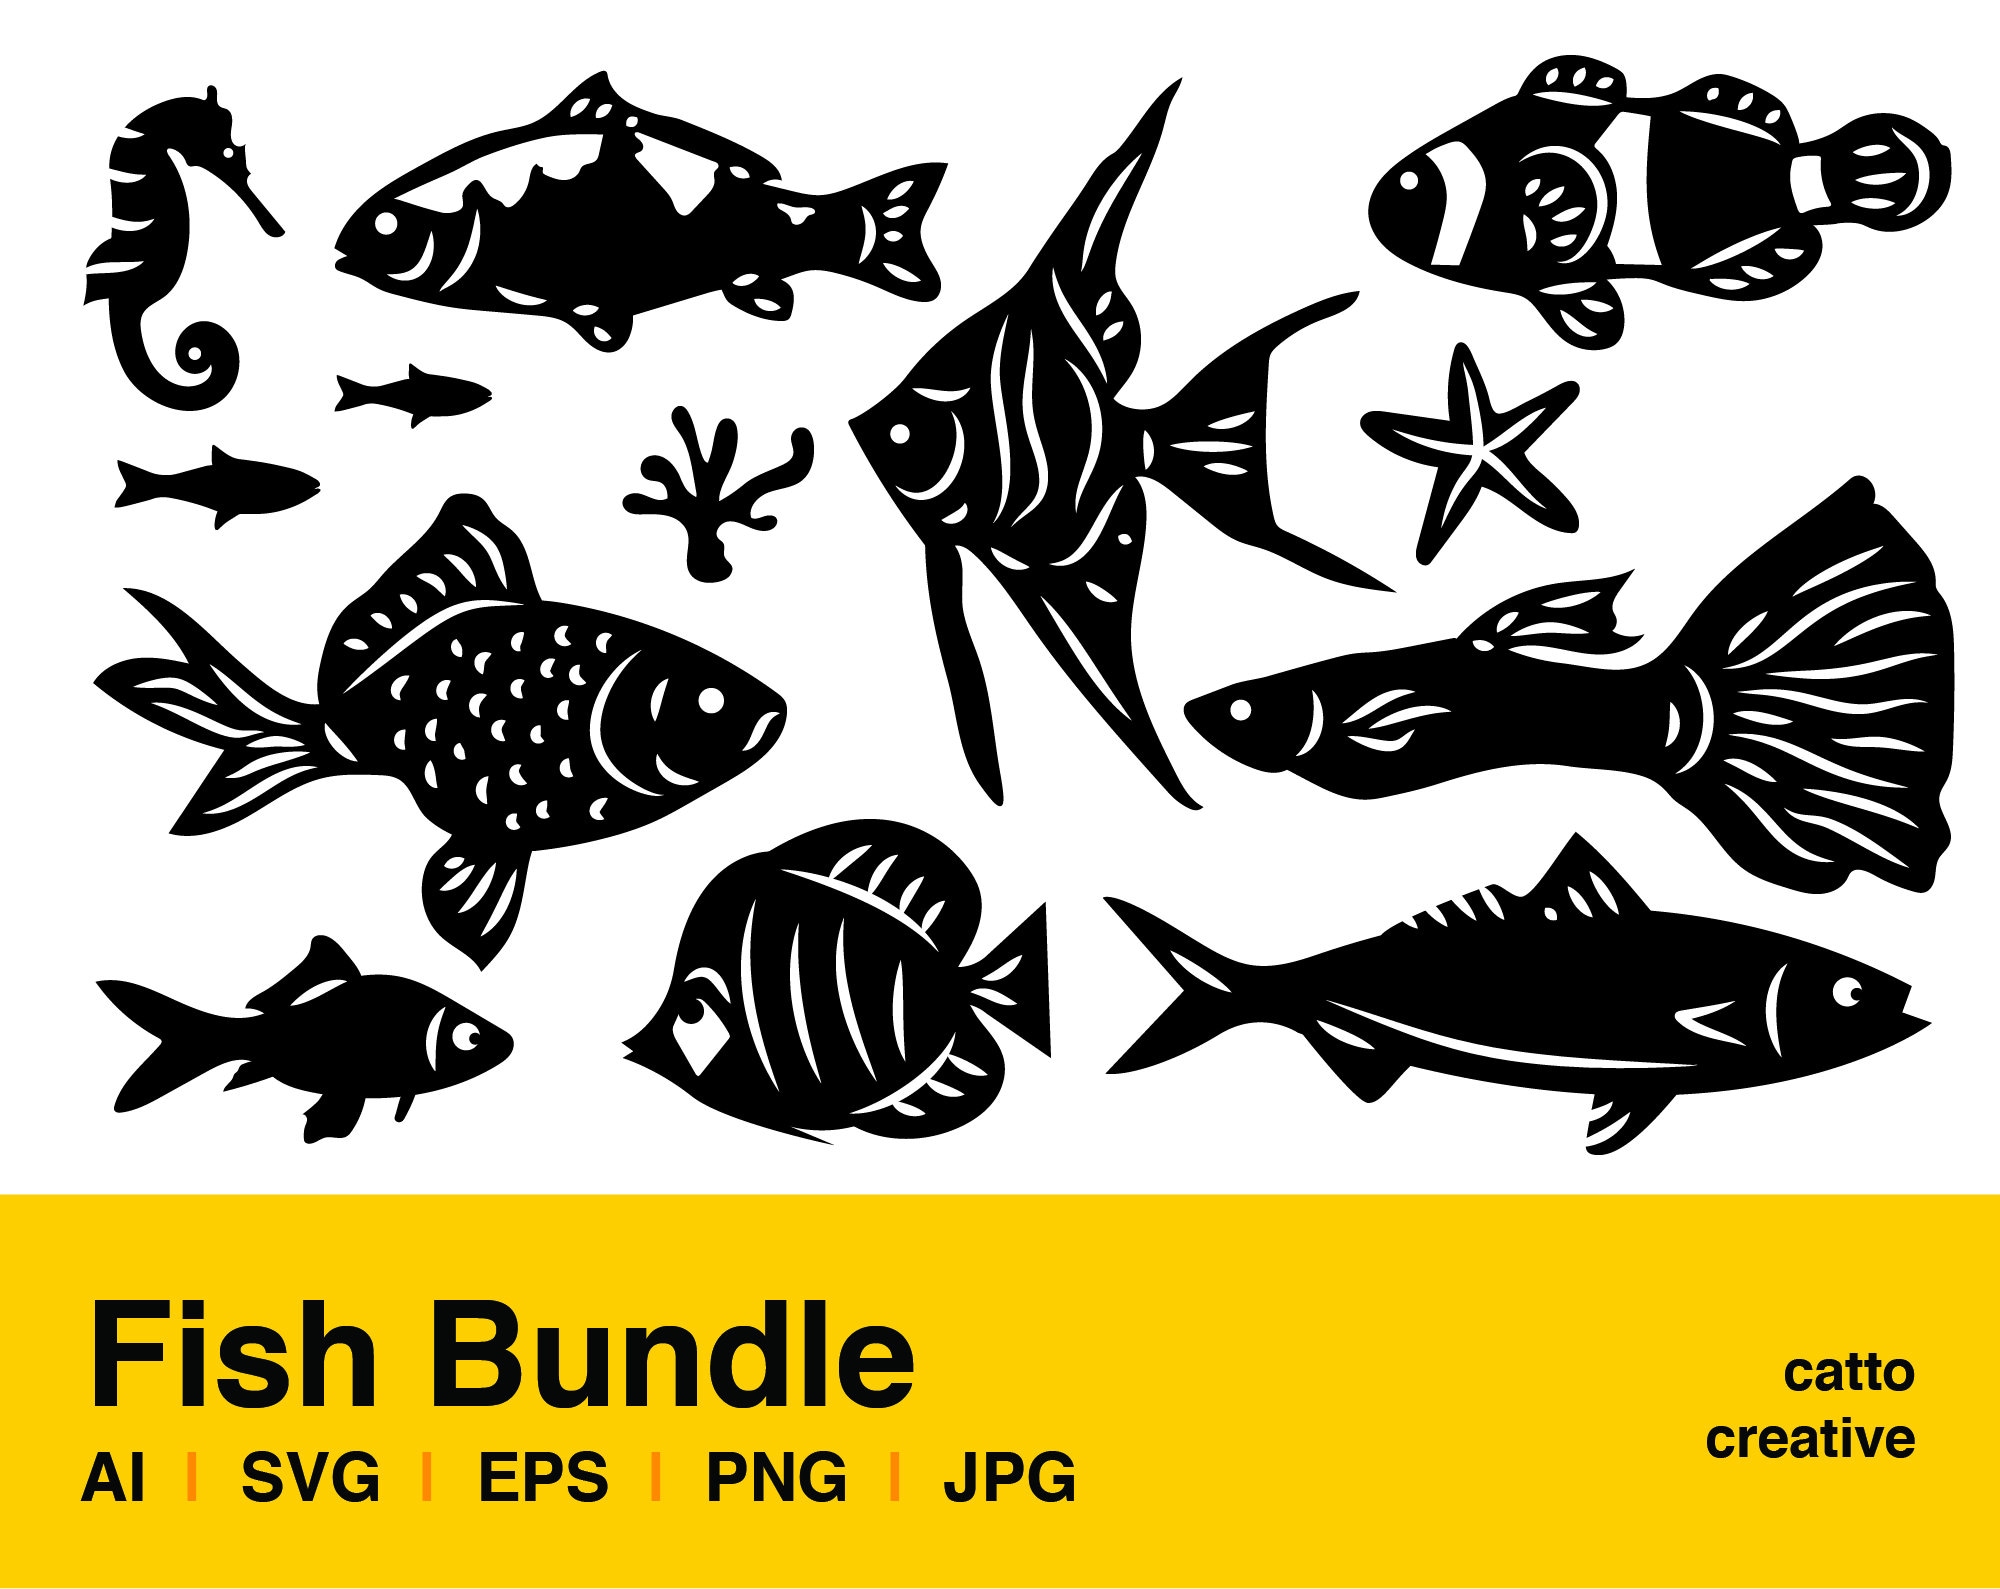 Fish Bundle / Artwork SVG File Cutting EPS design PNG | Etsy